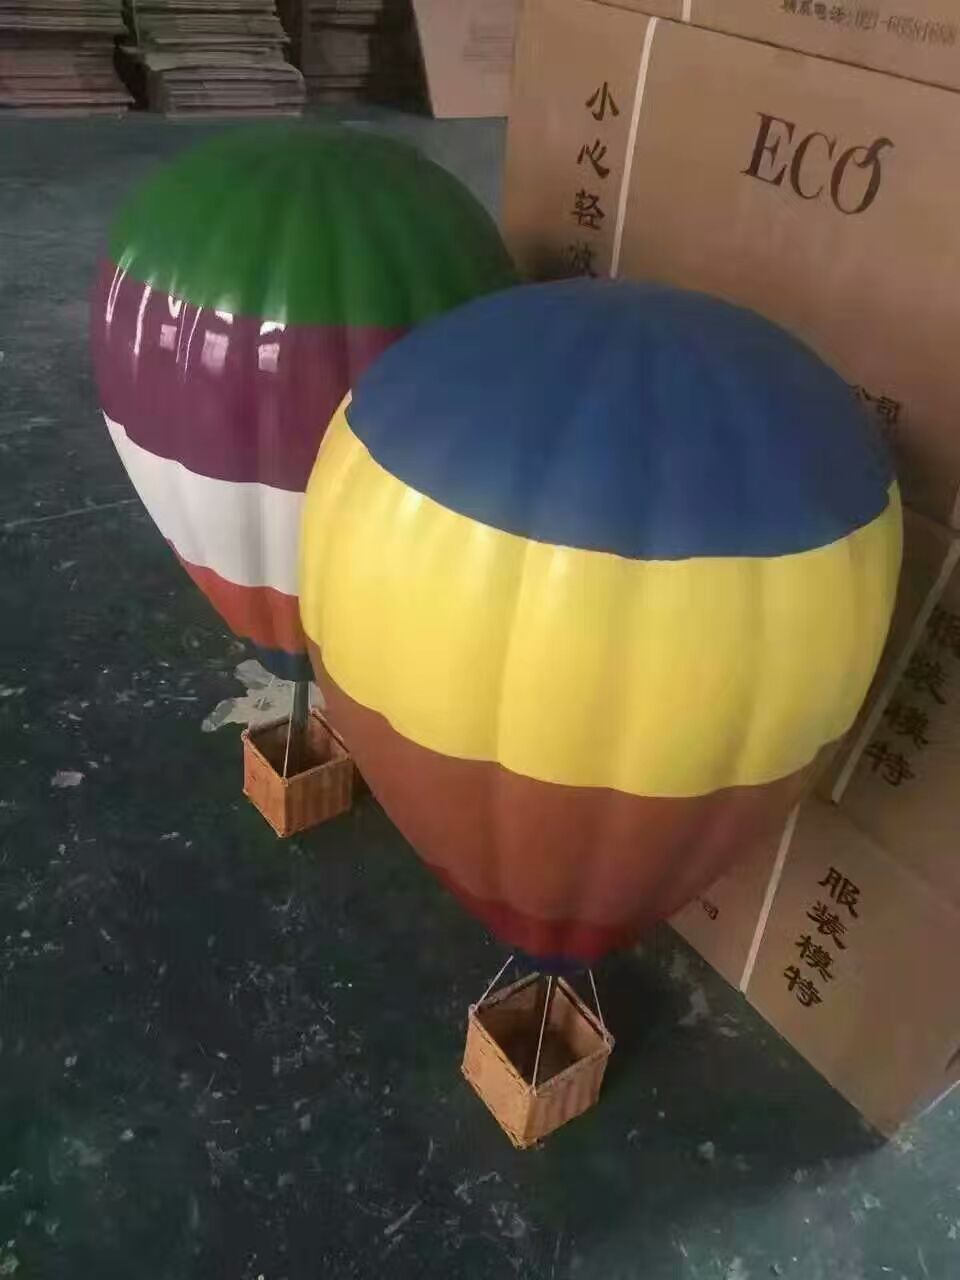 上海市热气球制作厂家展览出售厂家热气球 热气球制作厂家展览出售 热气球制作厂家展览出售